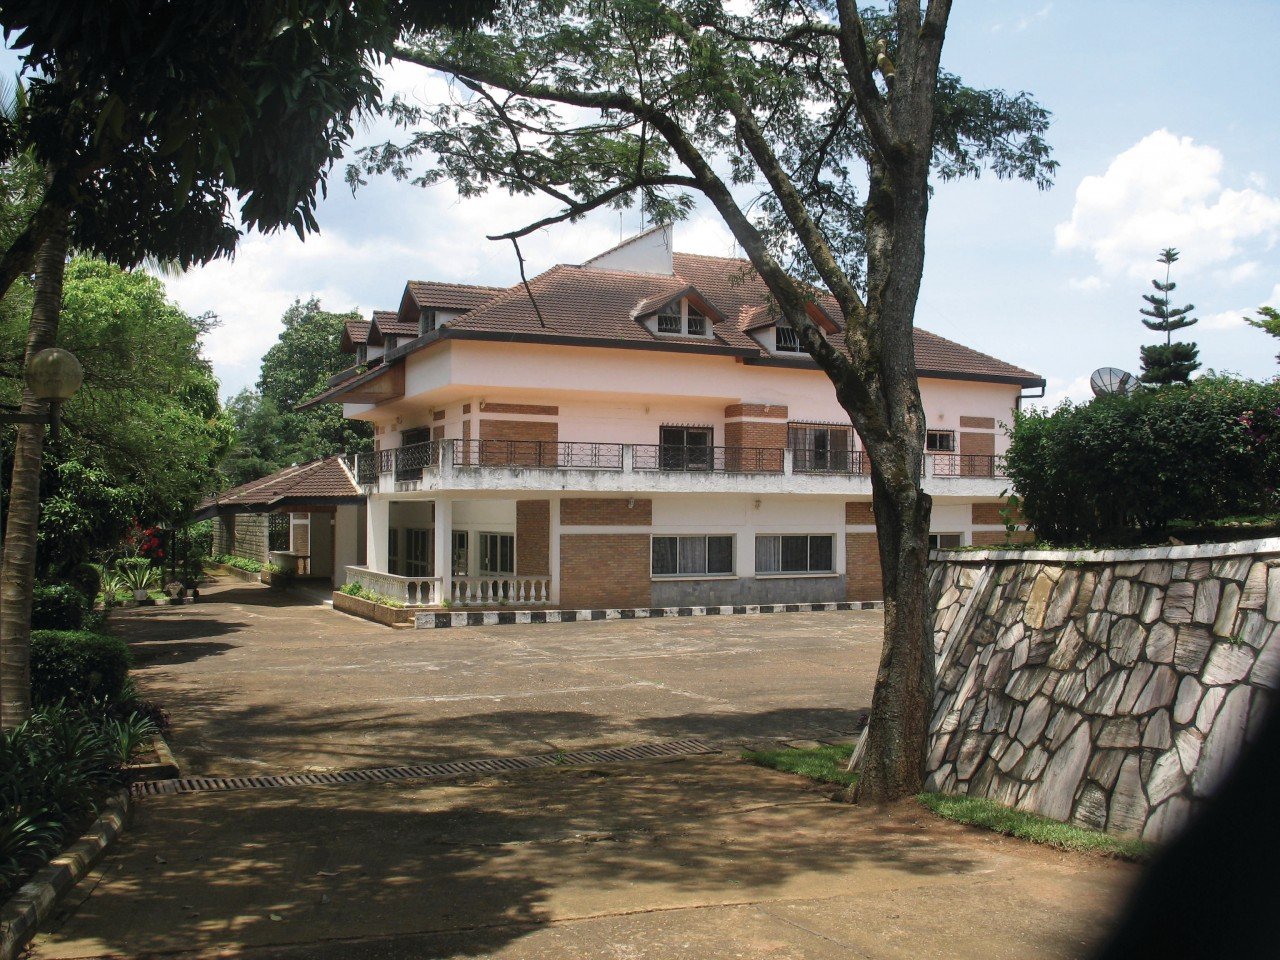 Tag3 : Besuch der Kigali-Gedenkstätte